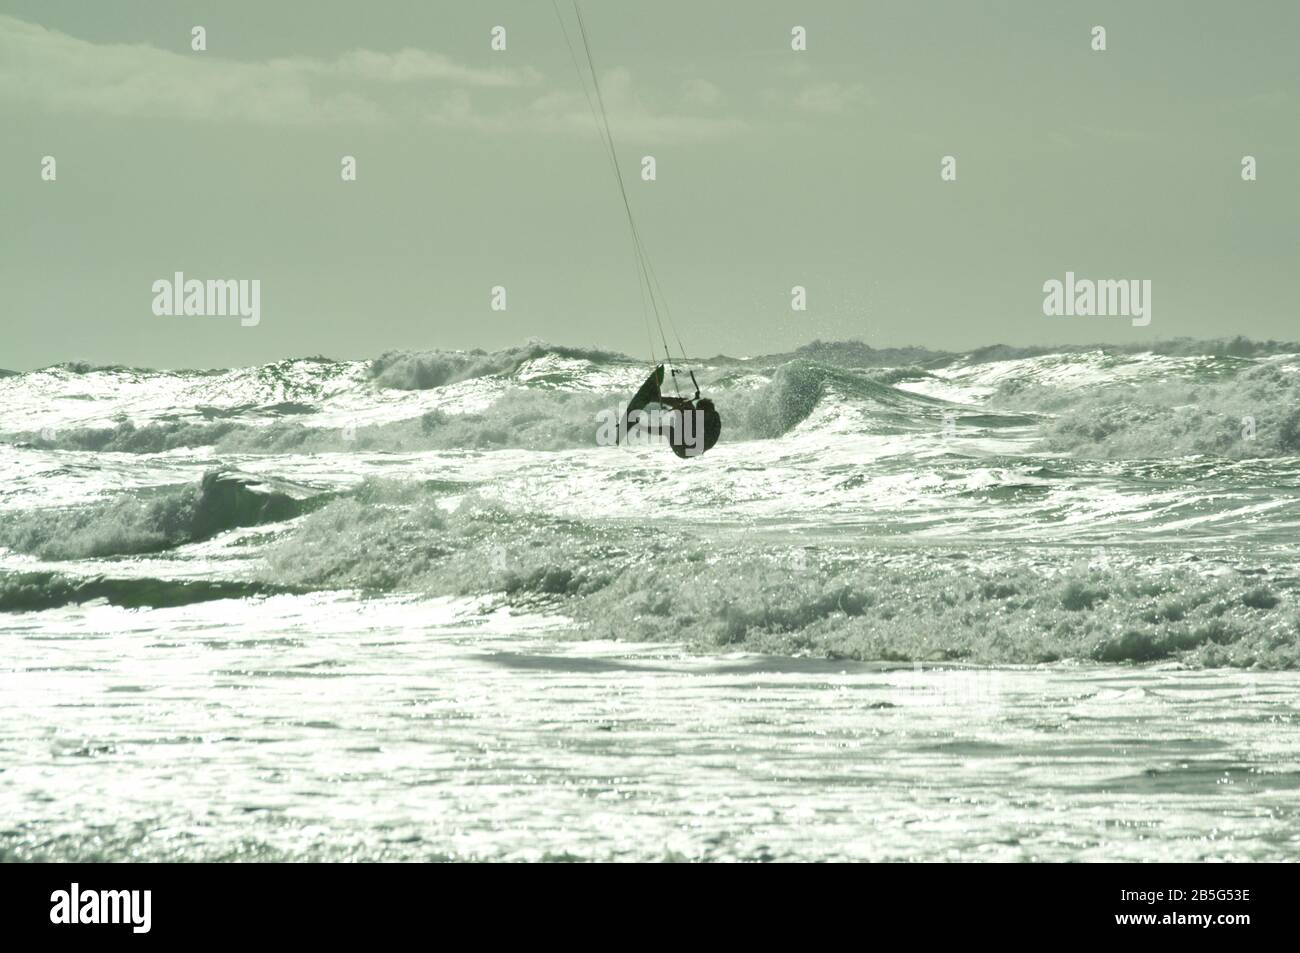 Cerf-volant estival en mer agitée à Lacanau-Océan, France Banque D'Images